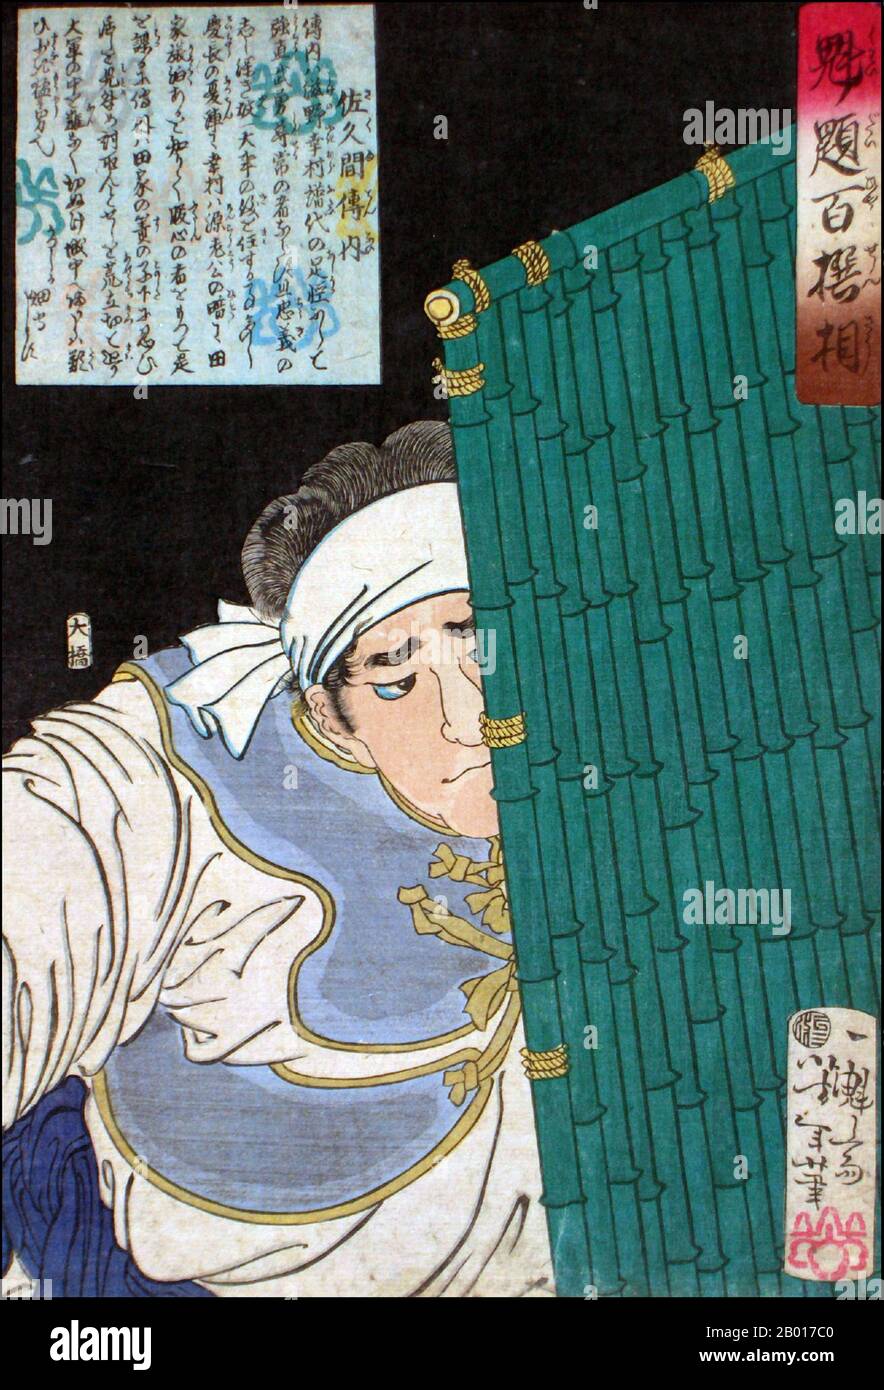 Japan: 'Sakuma Dennai mit einem Bambusschild'. Ukiyo-e Holzschnitt aus der Serie 'Heroes of the Water Margin' von Tsukioka Yoshitoshi (1839. - 9. Juni 1892), 1869. Tsukioka Yoshitoshi, auch Taiso Yoshitoshi genannt, war ein japanischer Künstler. Er ist weithin als der letzte große Meister des japanischen Holzschnitts Ukiyo-e anerkannt. Er gilt zudem als einer der größten Innovatoren der Form. Seine Karriere umfasste zwei Epochen – die letzten Jahre des feudalen Japans und die ersten Jahre des modernen Japans nach der Meiji-Restauration. Stockfoto